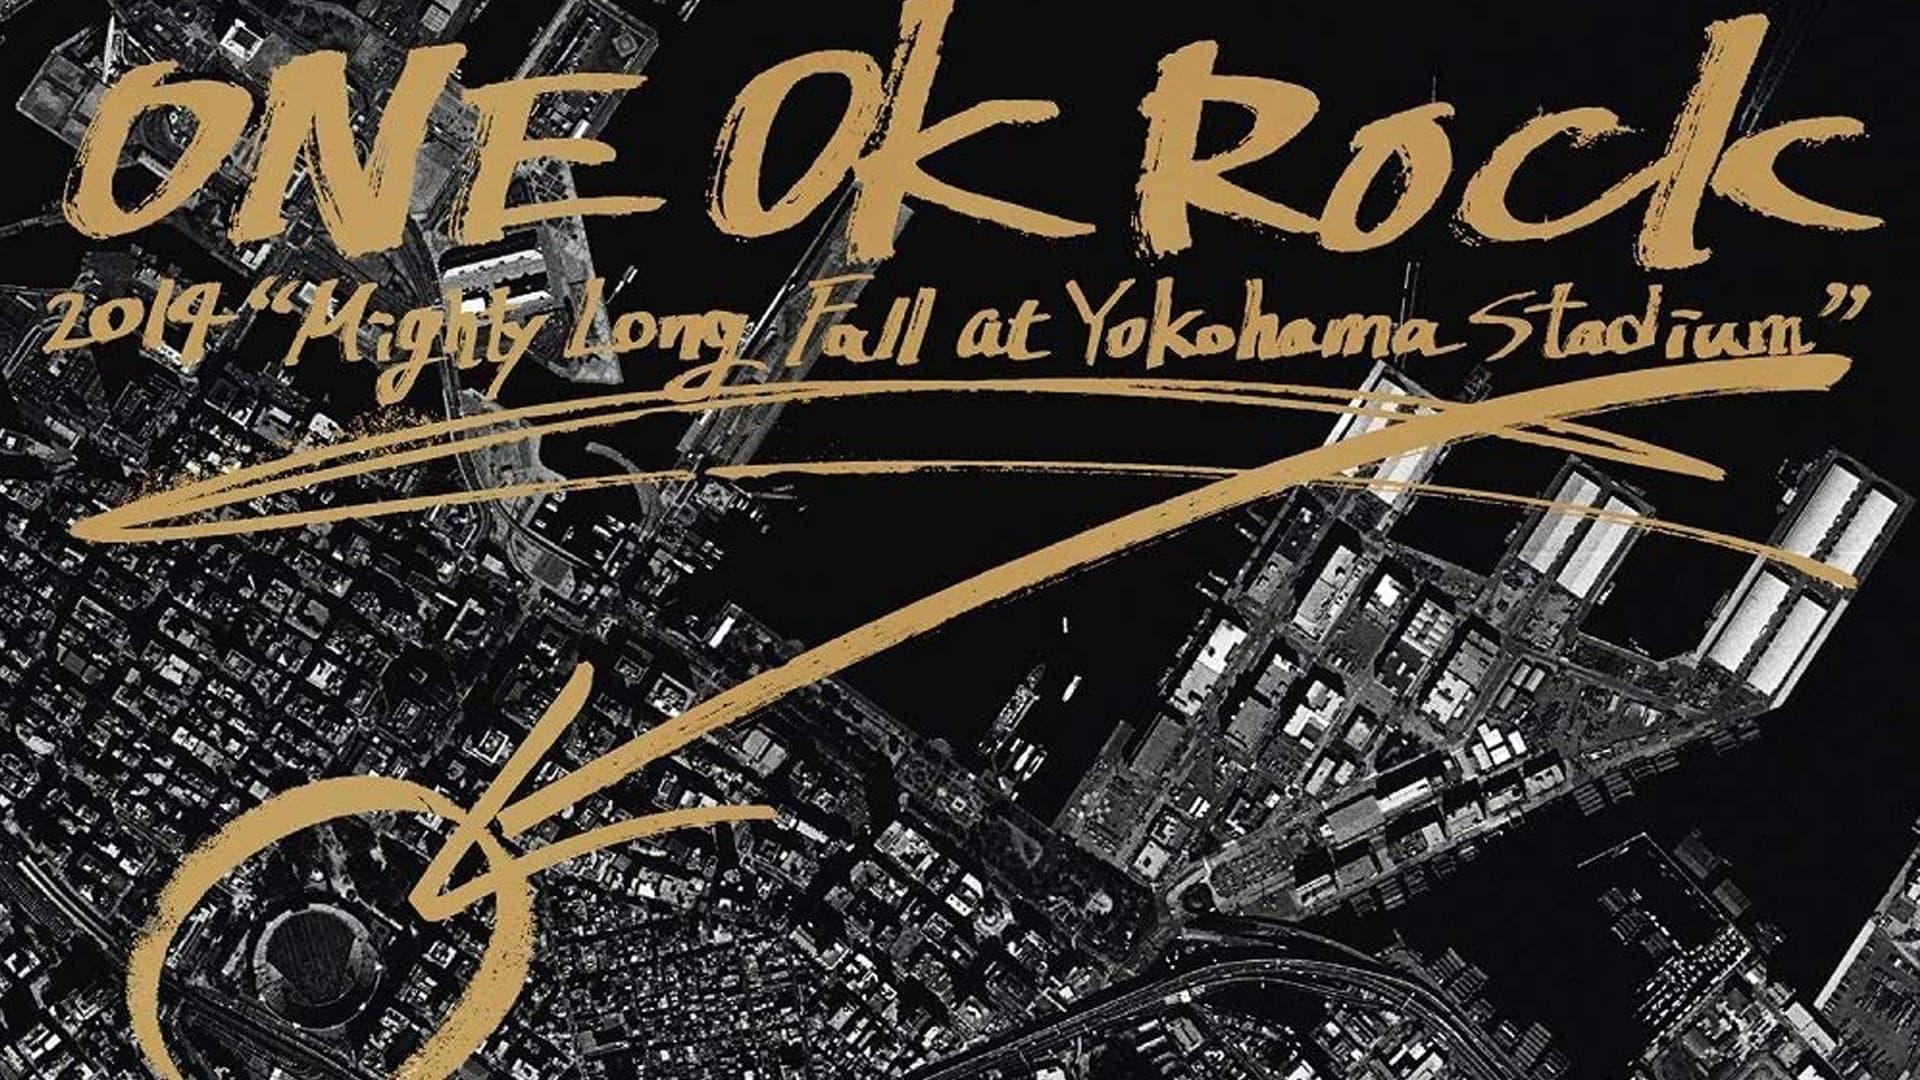 ONE OK ROCK Mighty Long Fall Live at Yokohama Stadium backdrop